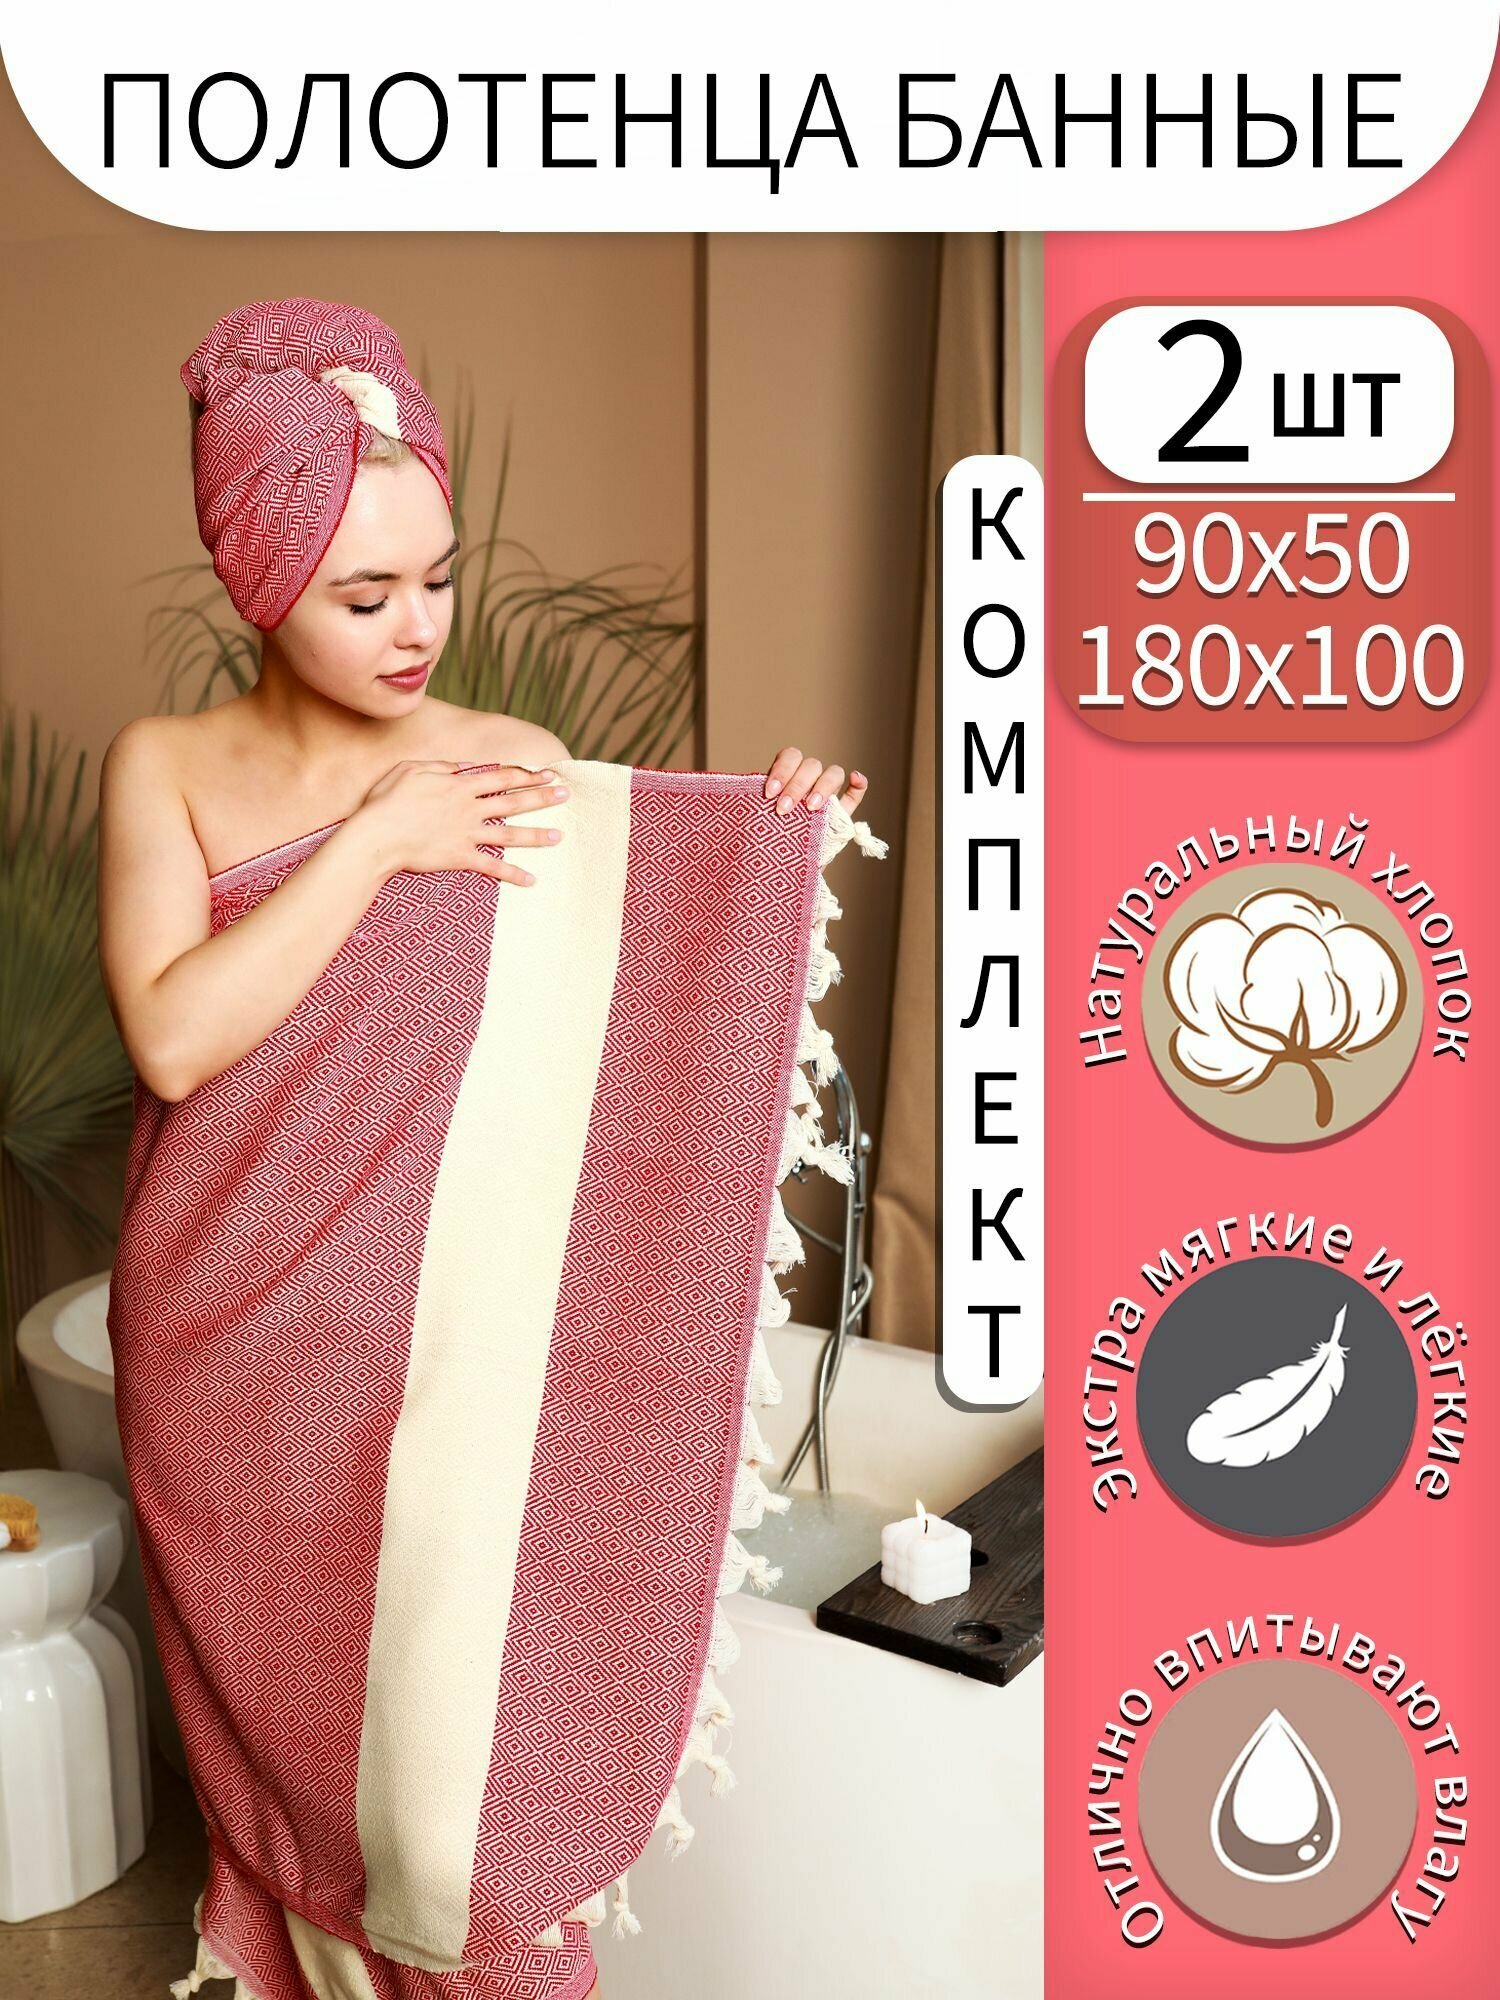 Набор турецких банных полотенец / Цвет фуксия / Пештемаль для сауны, массажа, пляжное